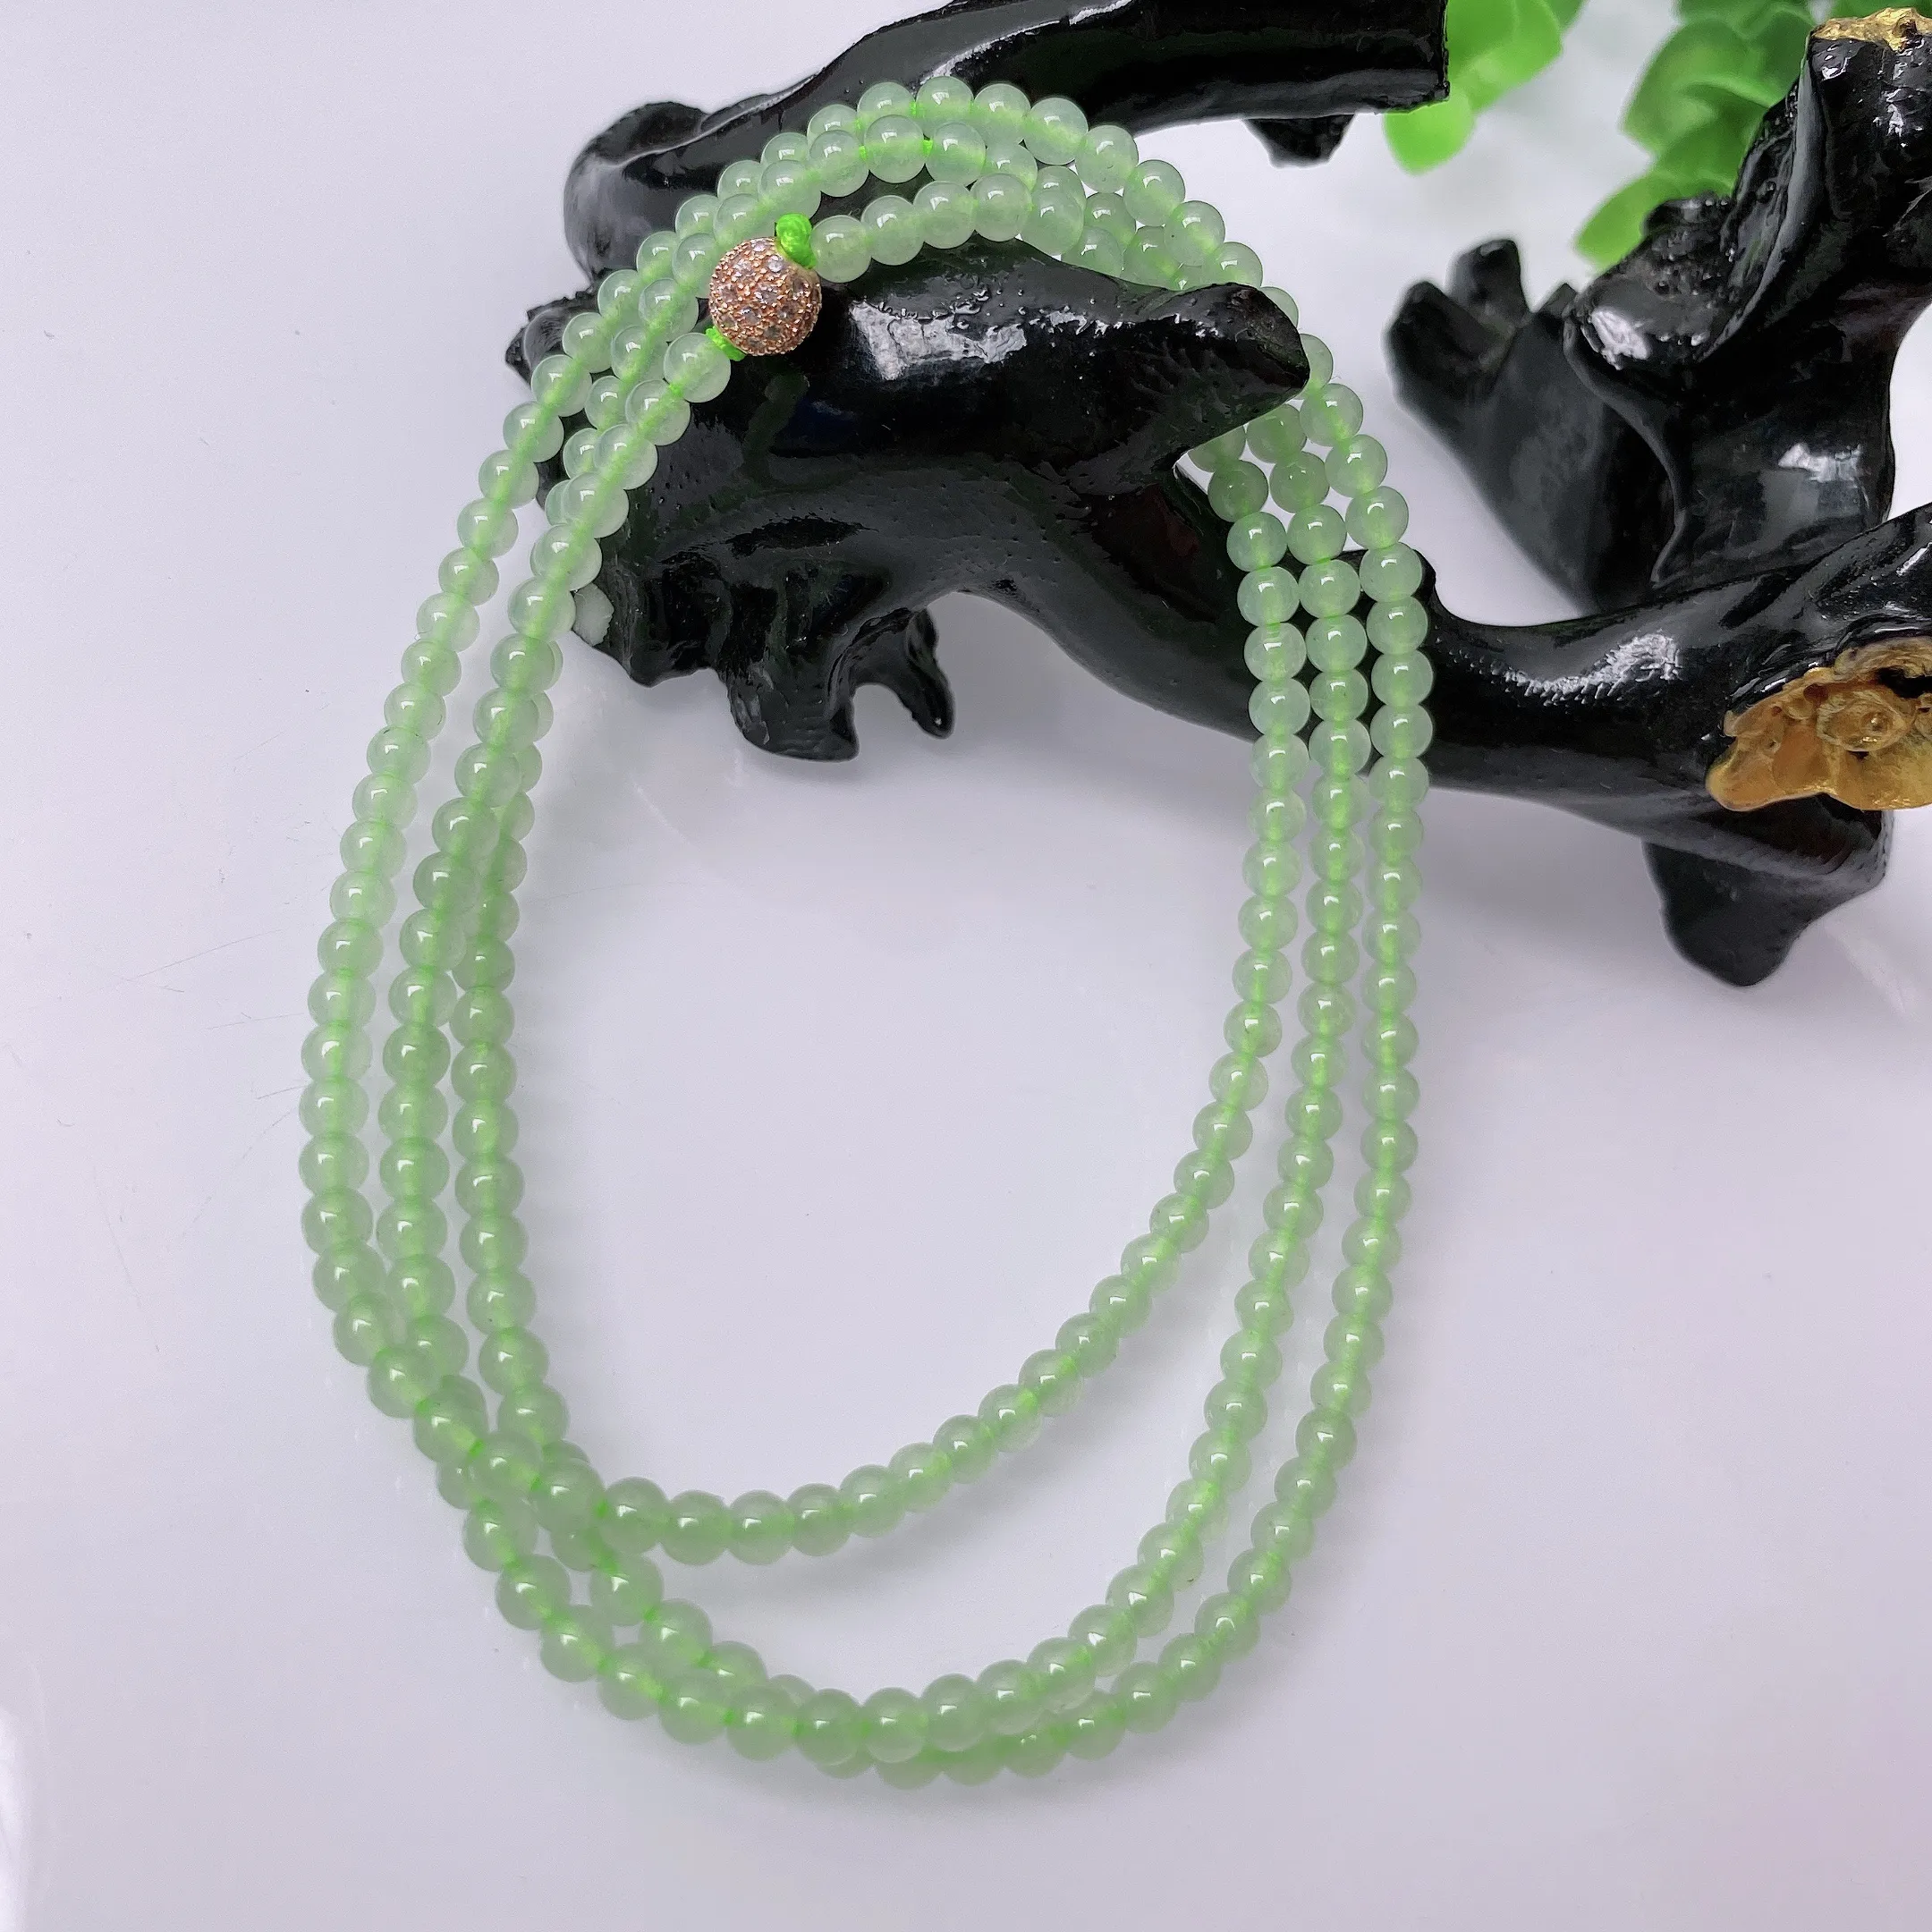 【超低价放漏】天然A货翡翠 绿色项链   小米珠 翡翠项链 玉质细腻  冰清玉润   颜色漂亮  取一尺寸3.5mm   #41915208